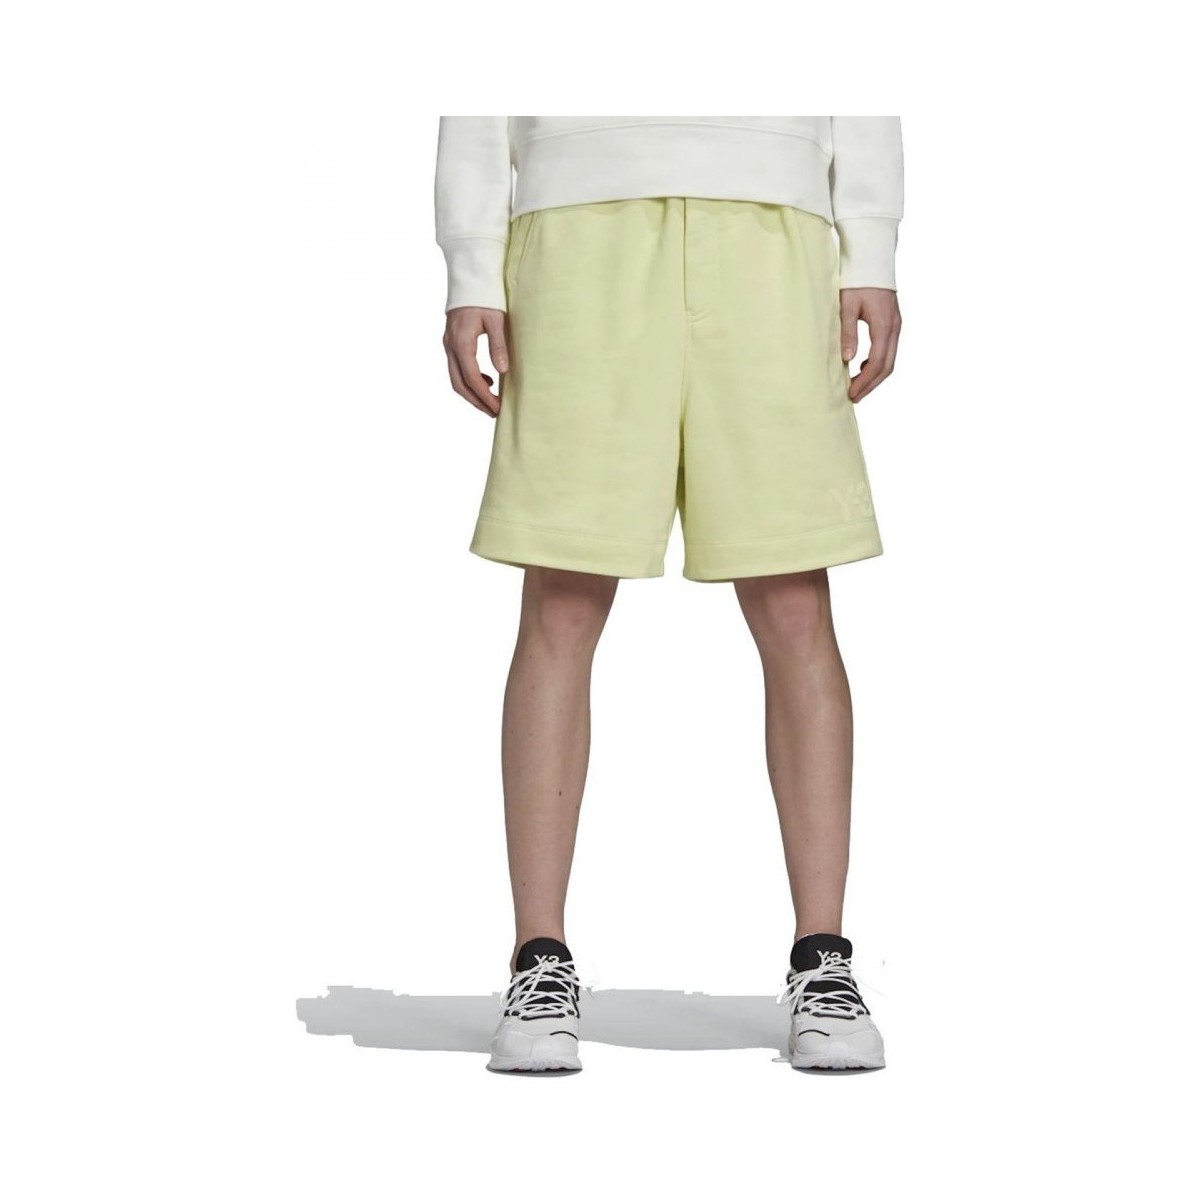 Textiel Heren Korte broeken / Bermuda's adidas Originals M Cl Try Shorts Geel